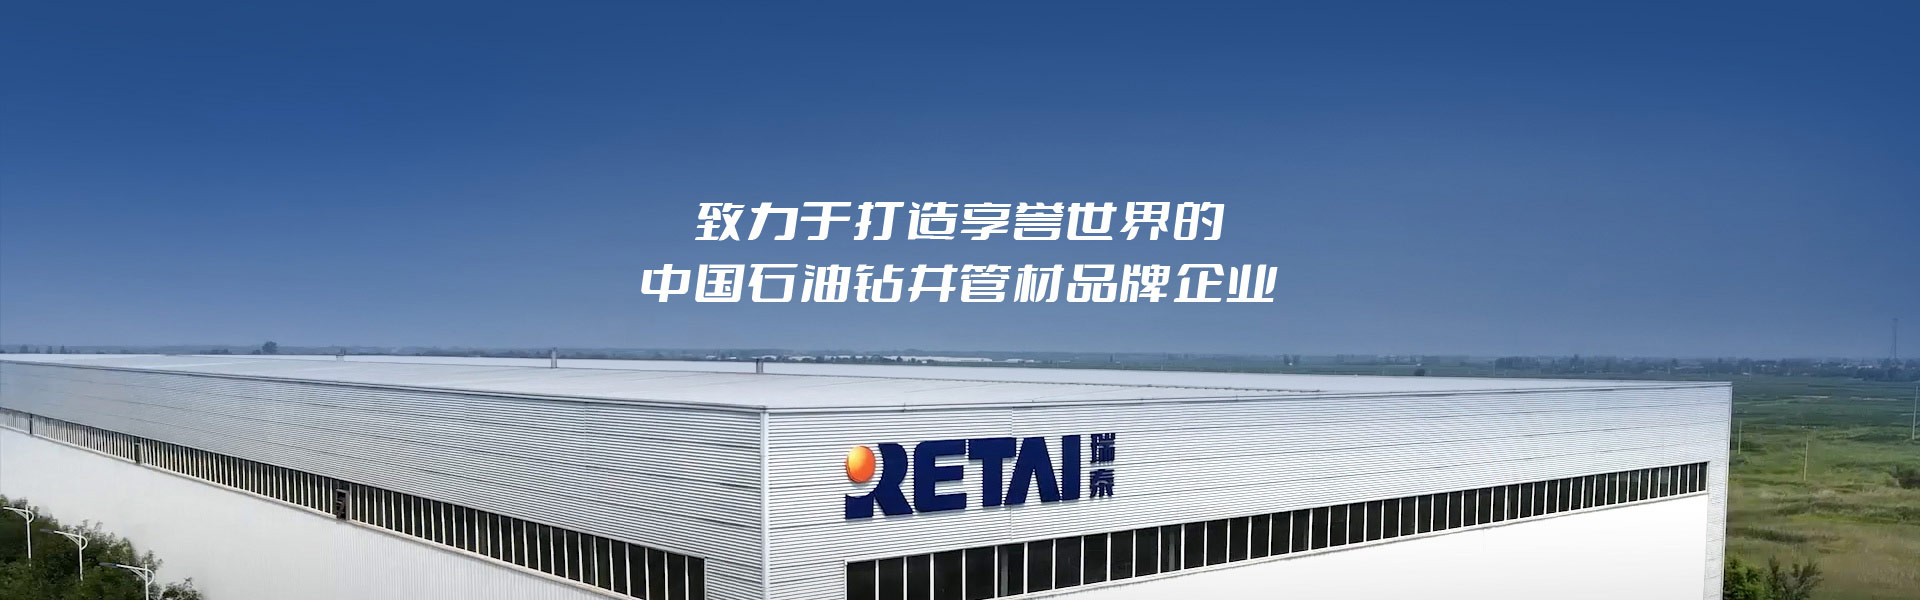 瑞泰石油-致力于打造享誉世界的中国石油钻井管材品牌企业